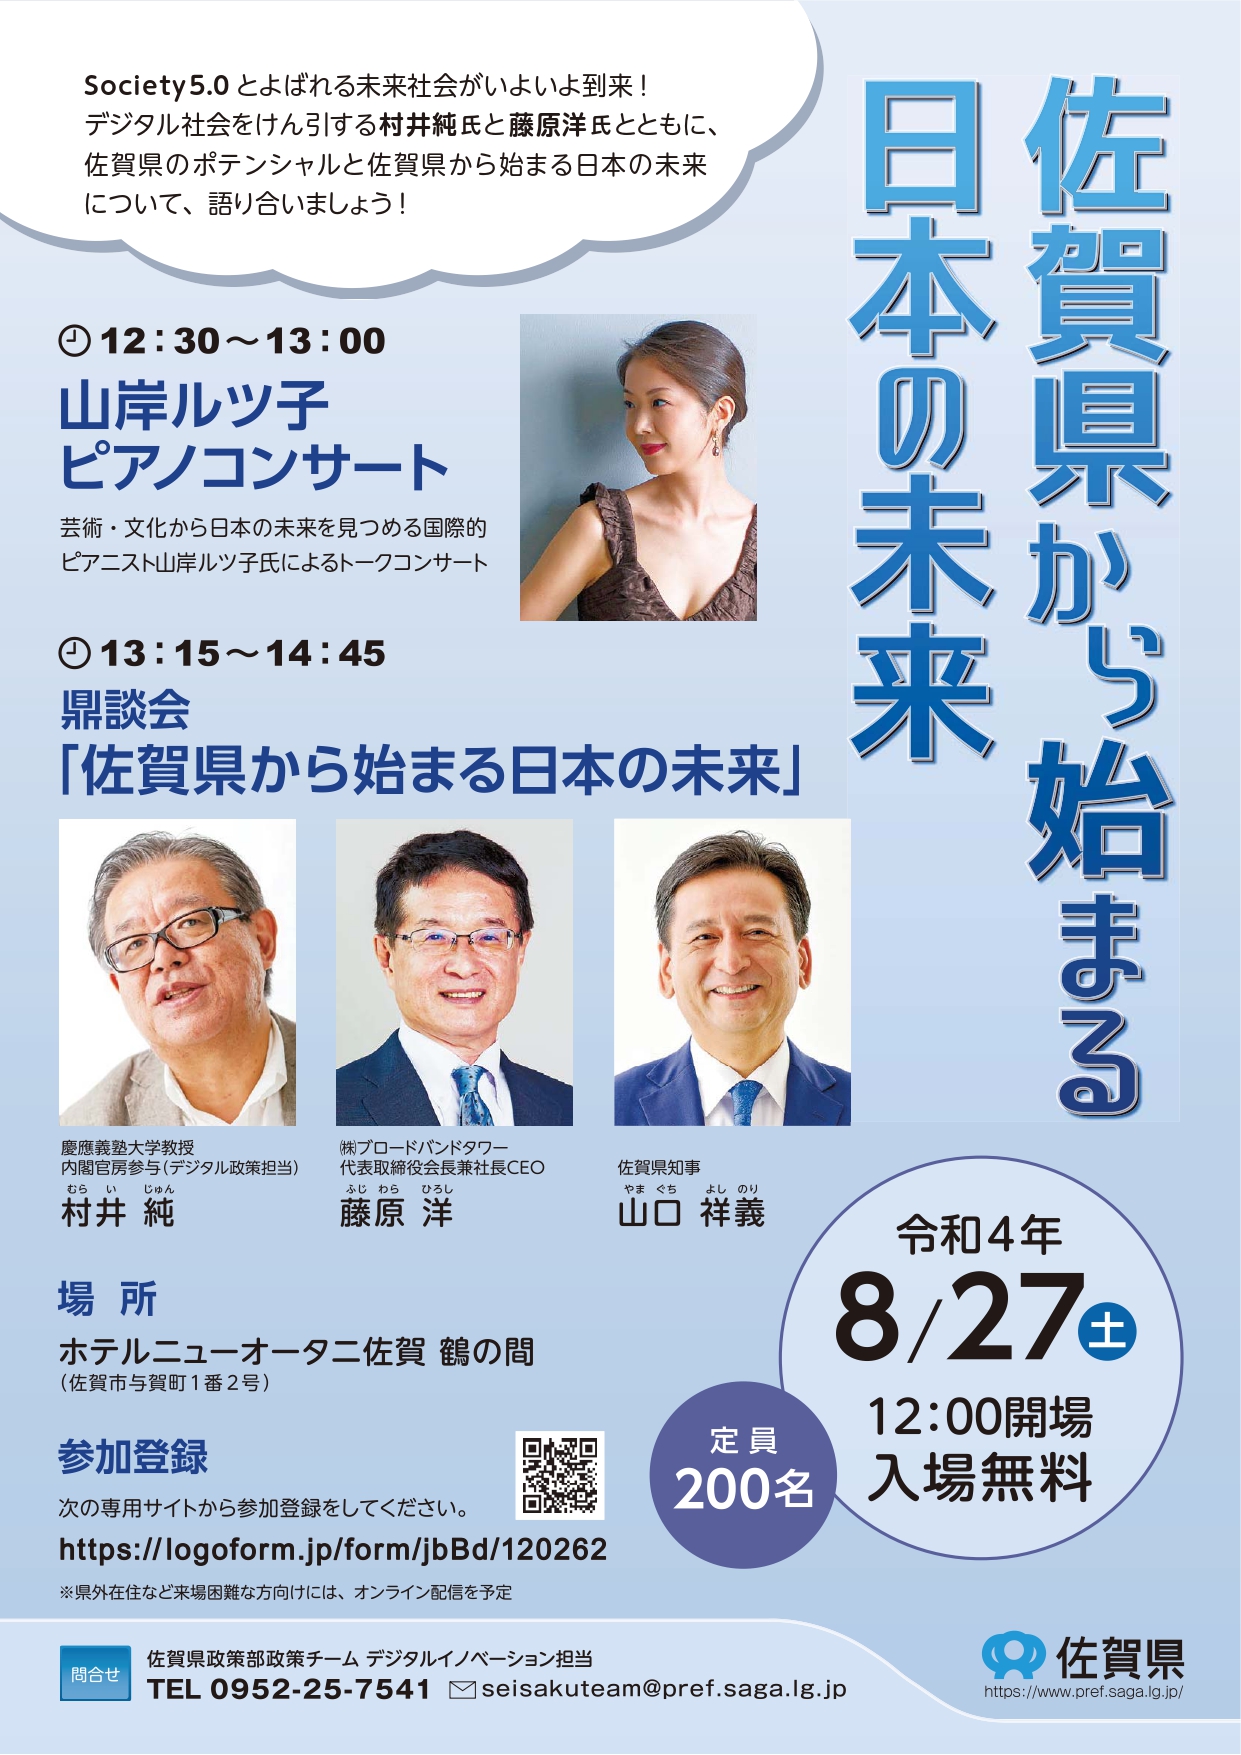 【8月27日】シンポジウム「佐賀県から始まる日本の未来」の開催について